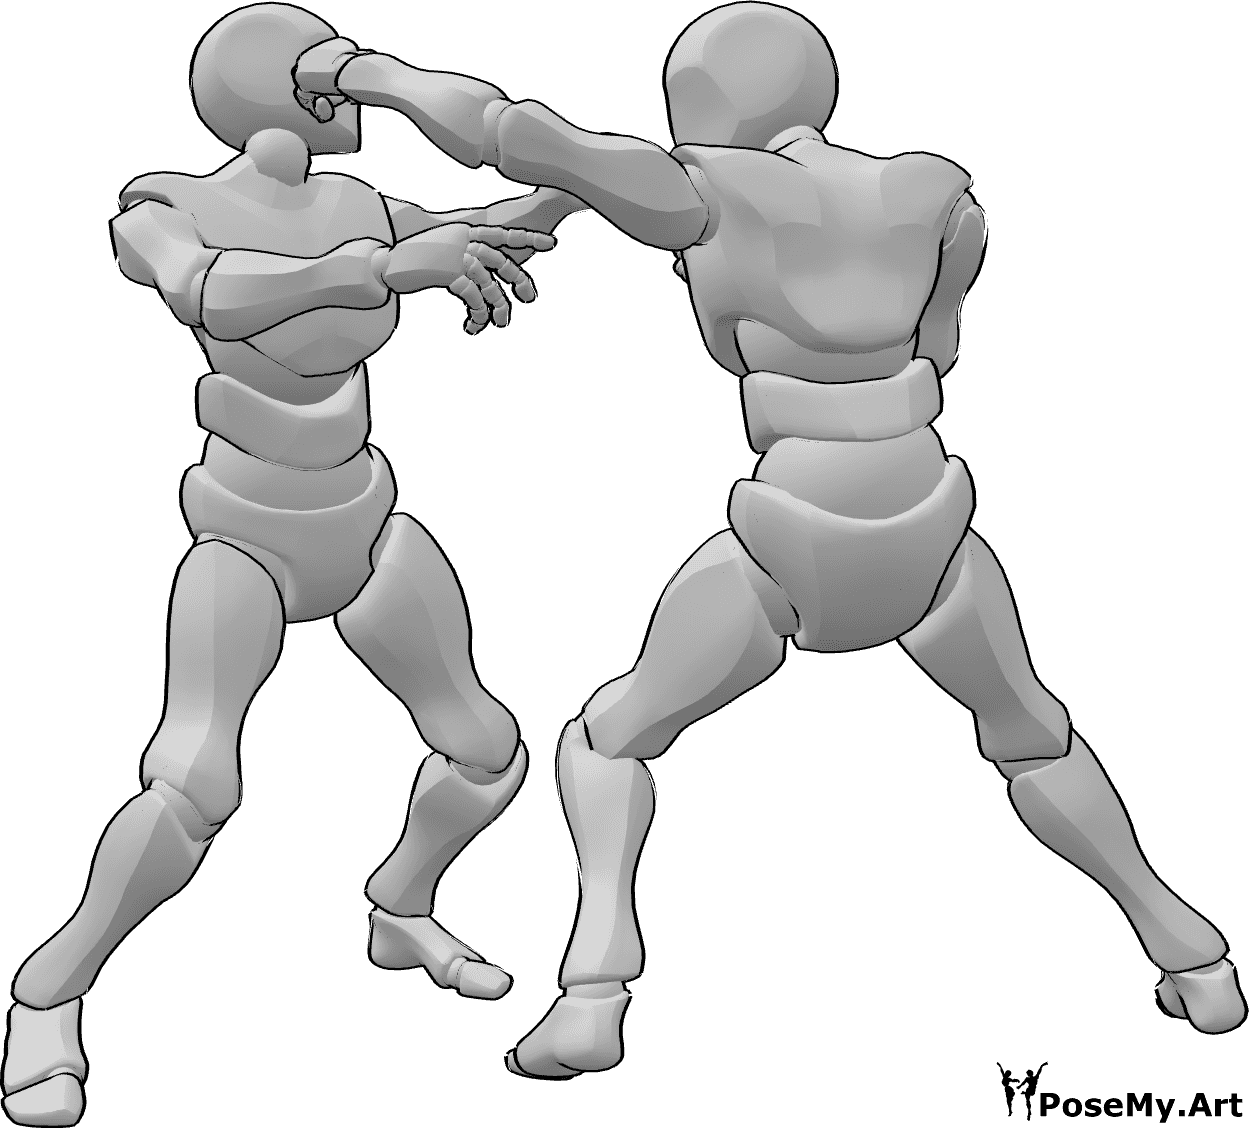 Referencia de poses- Postura de golpe en la cabeza - Machos peleando, uno golpea al otro en la cabeza posan